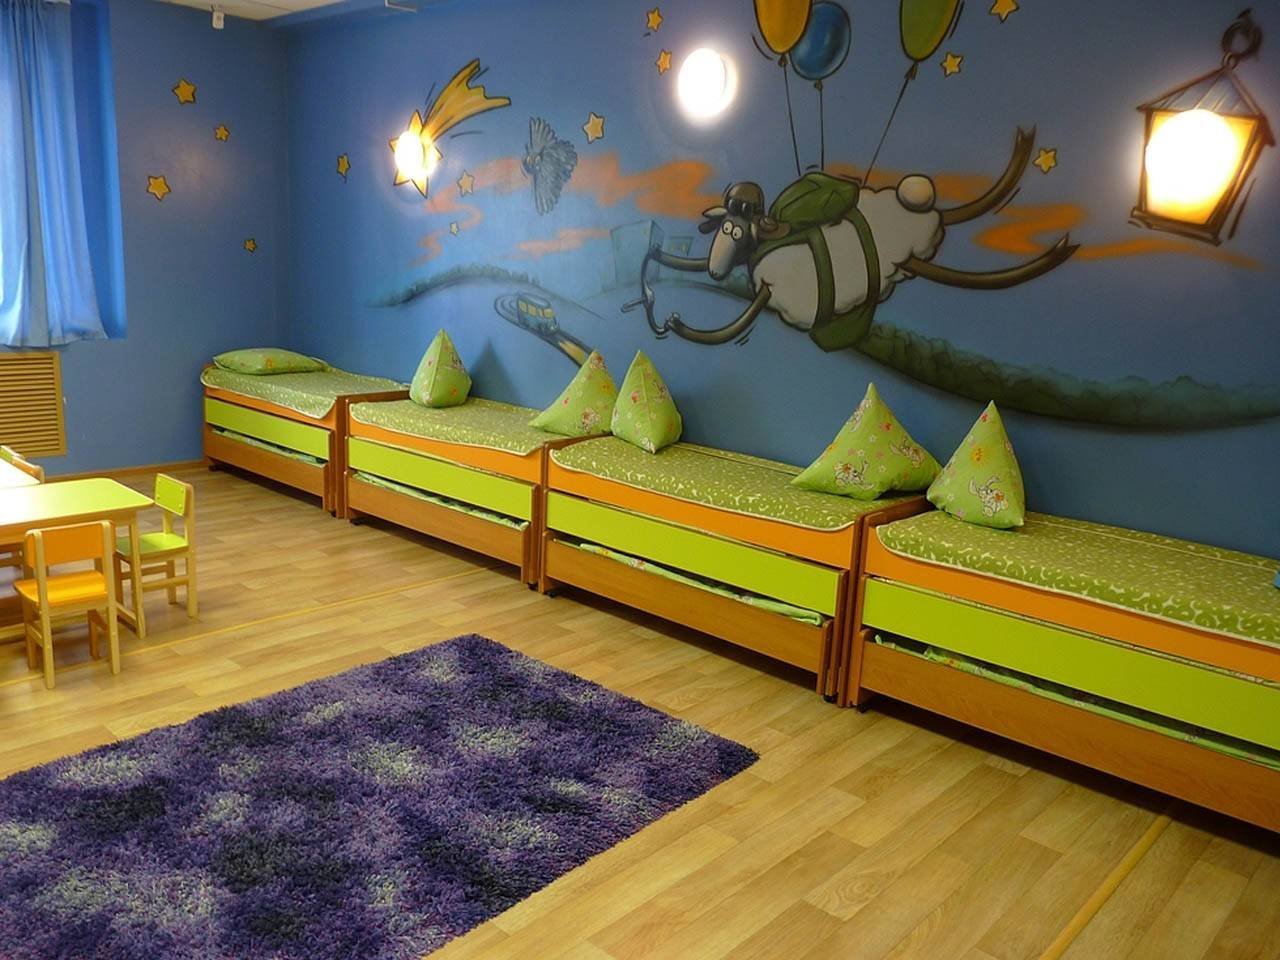 Спальни в детском саду оформление стен фото